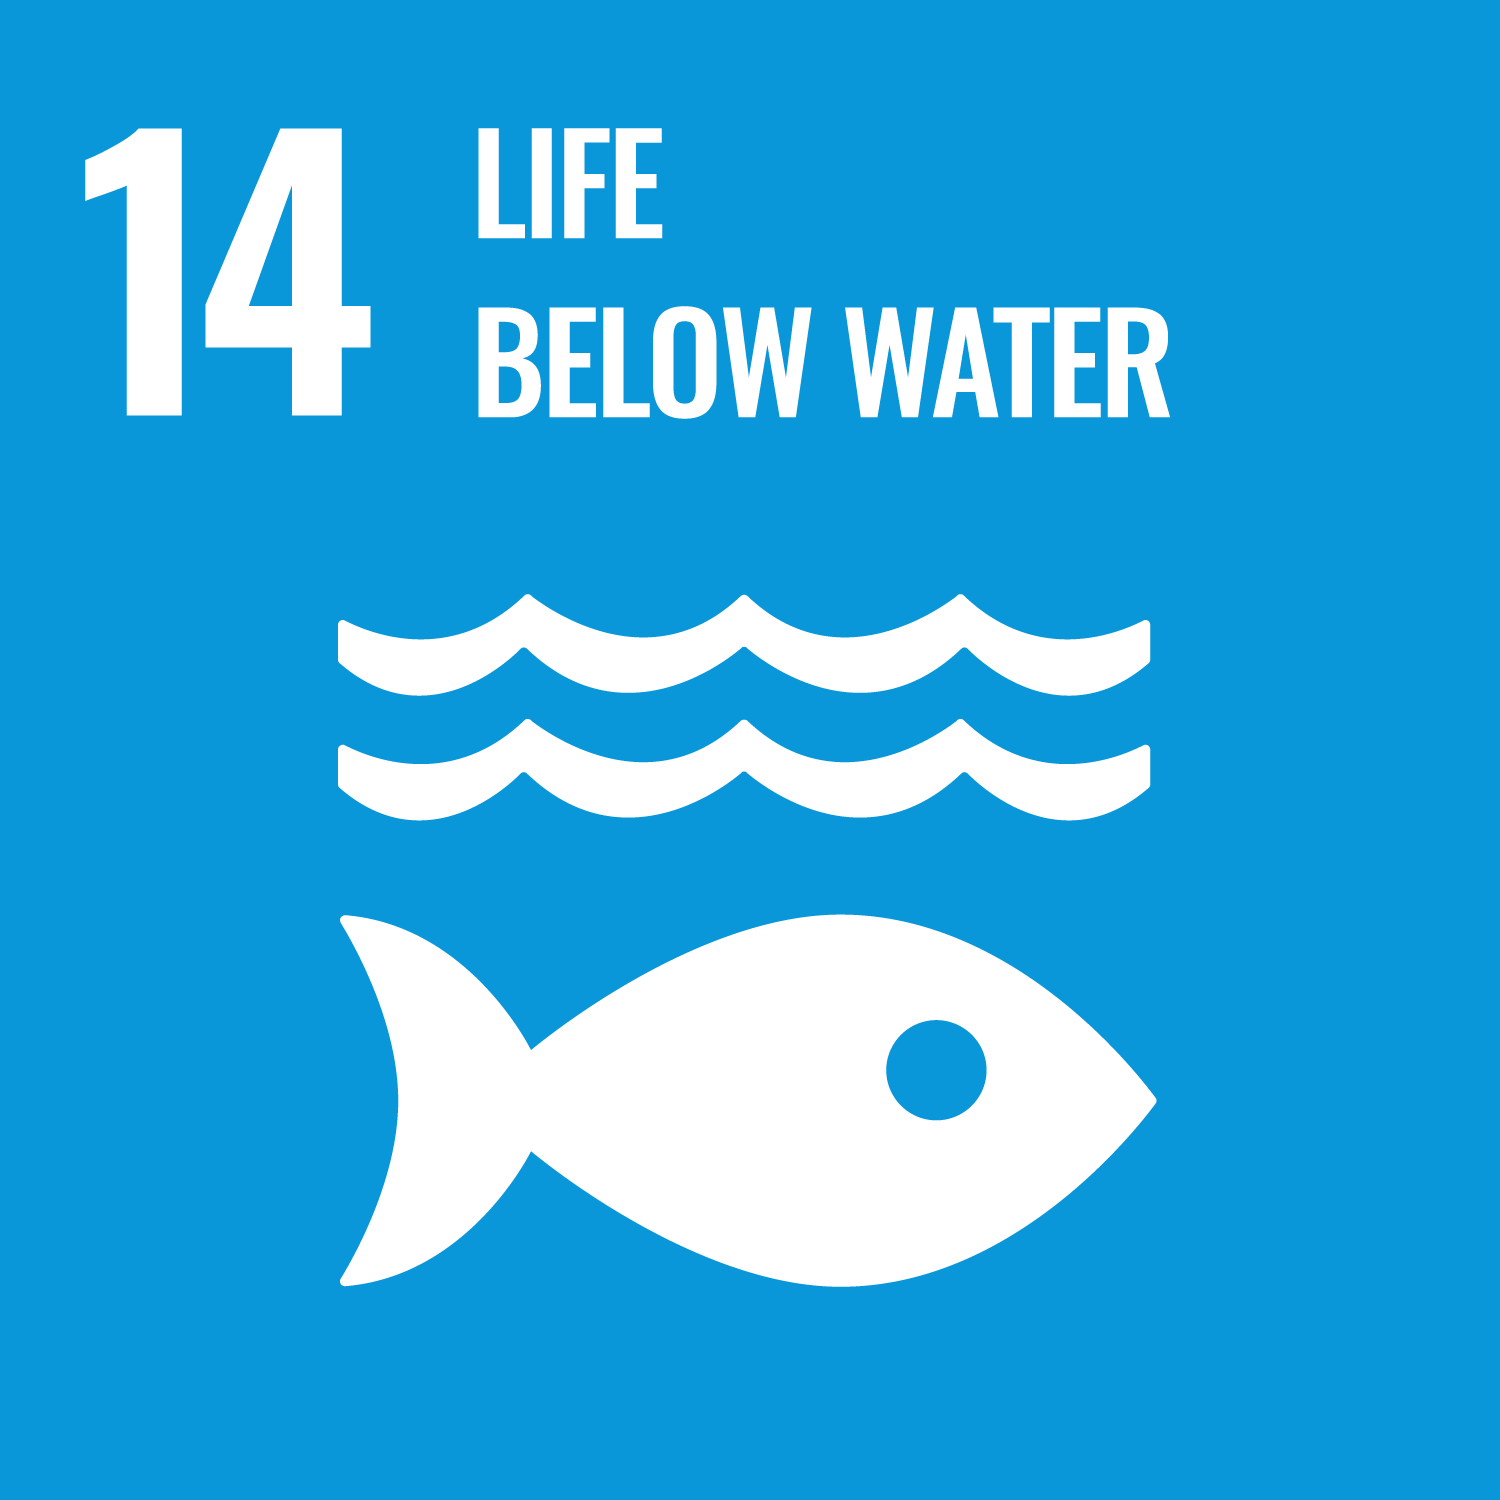 UN Sustainable Development Goal 14: Life Below Water